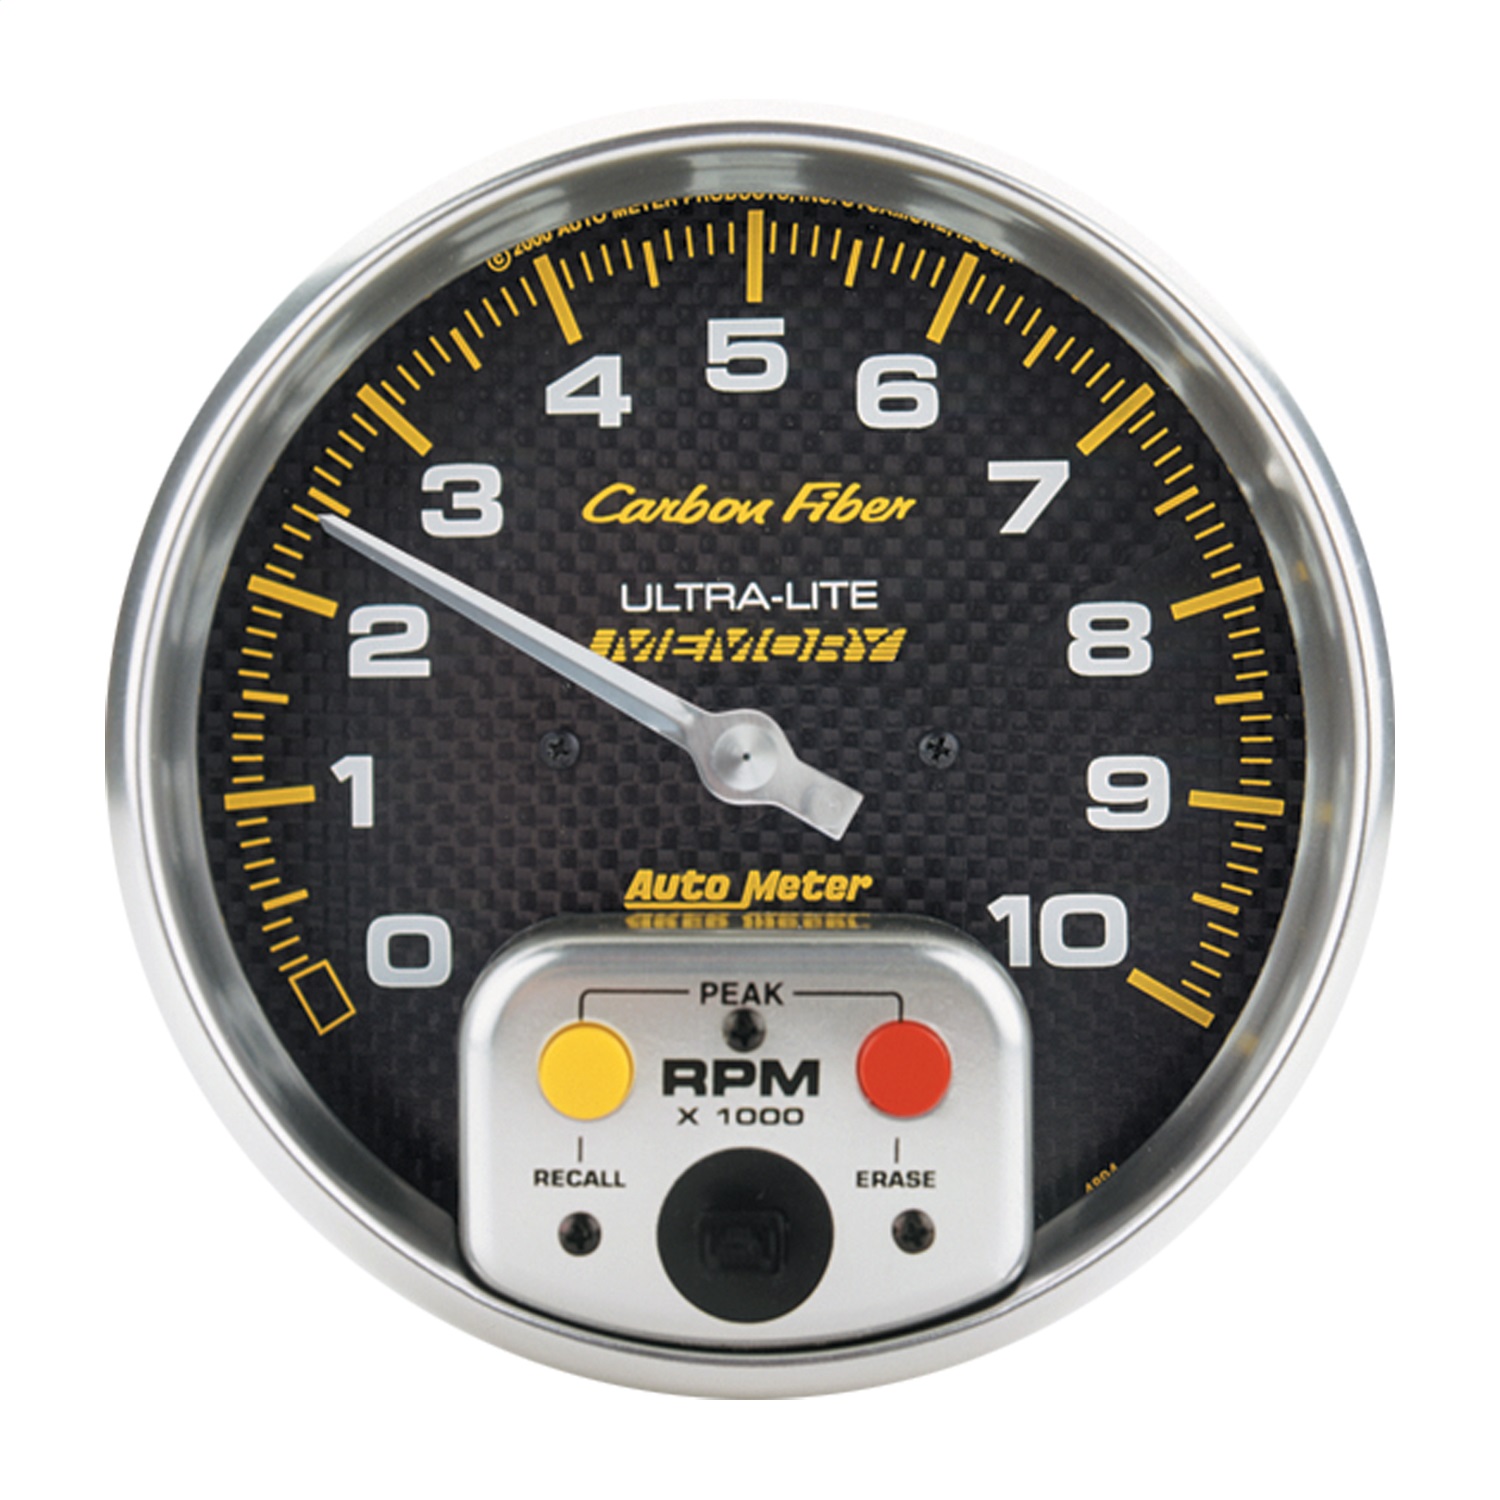 Auto Meter Auto Meter 4894 Carbon Fiber; Electric In-Dash Tachometer